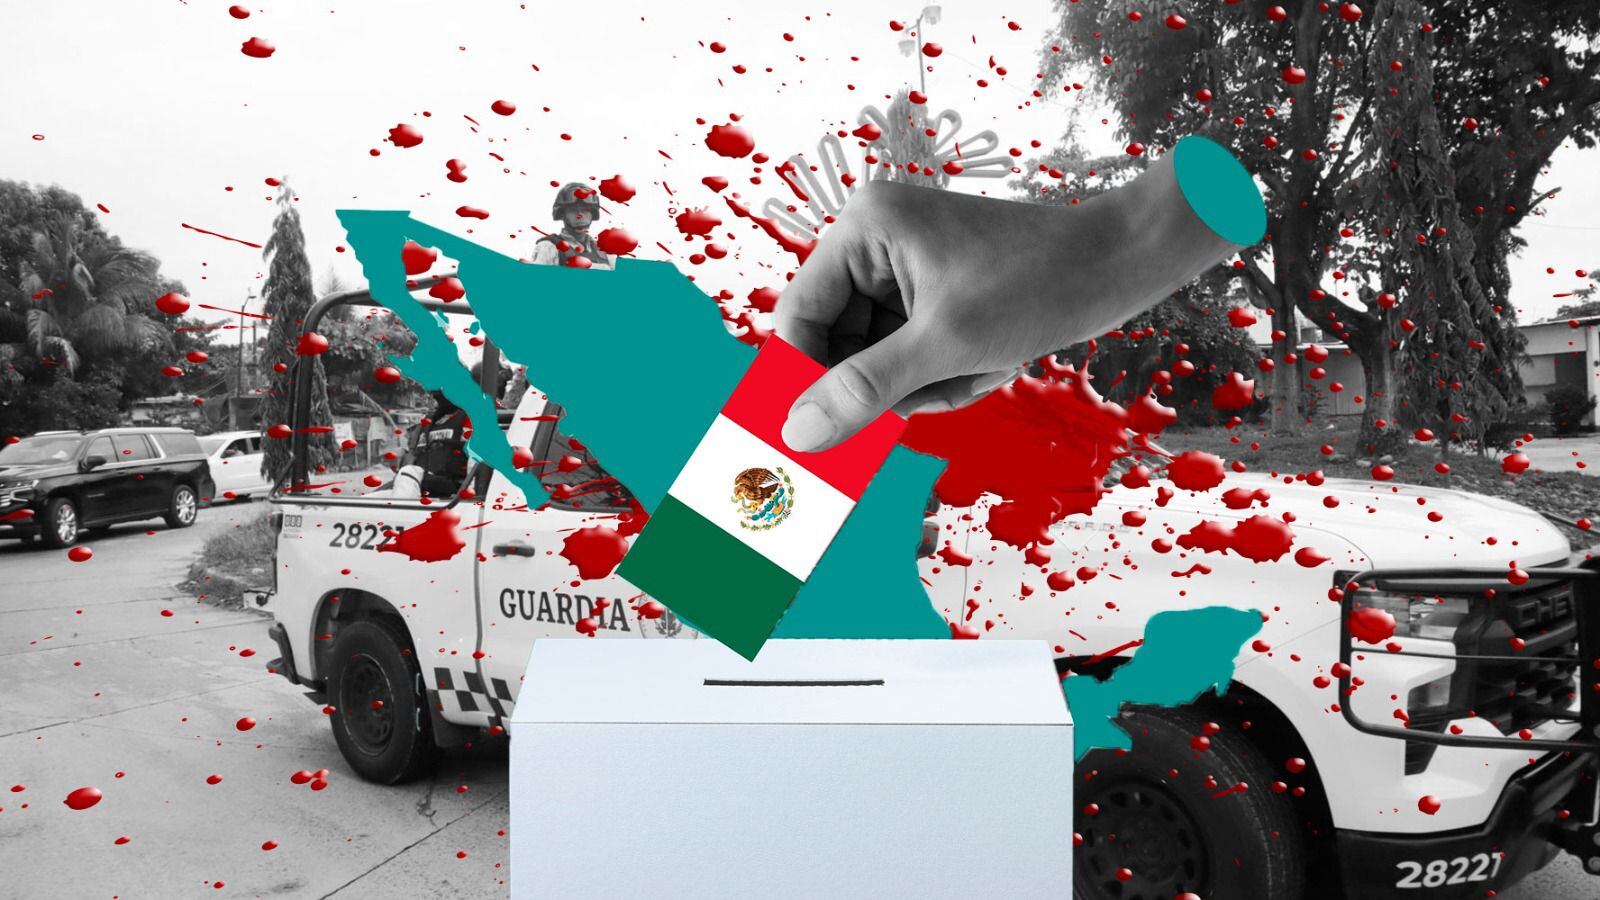 Instituto electoral de Chiapas externa su preocupación por la violencia electoral